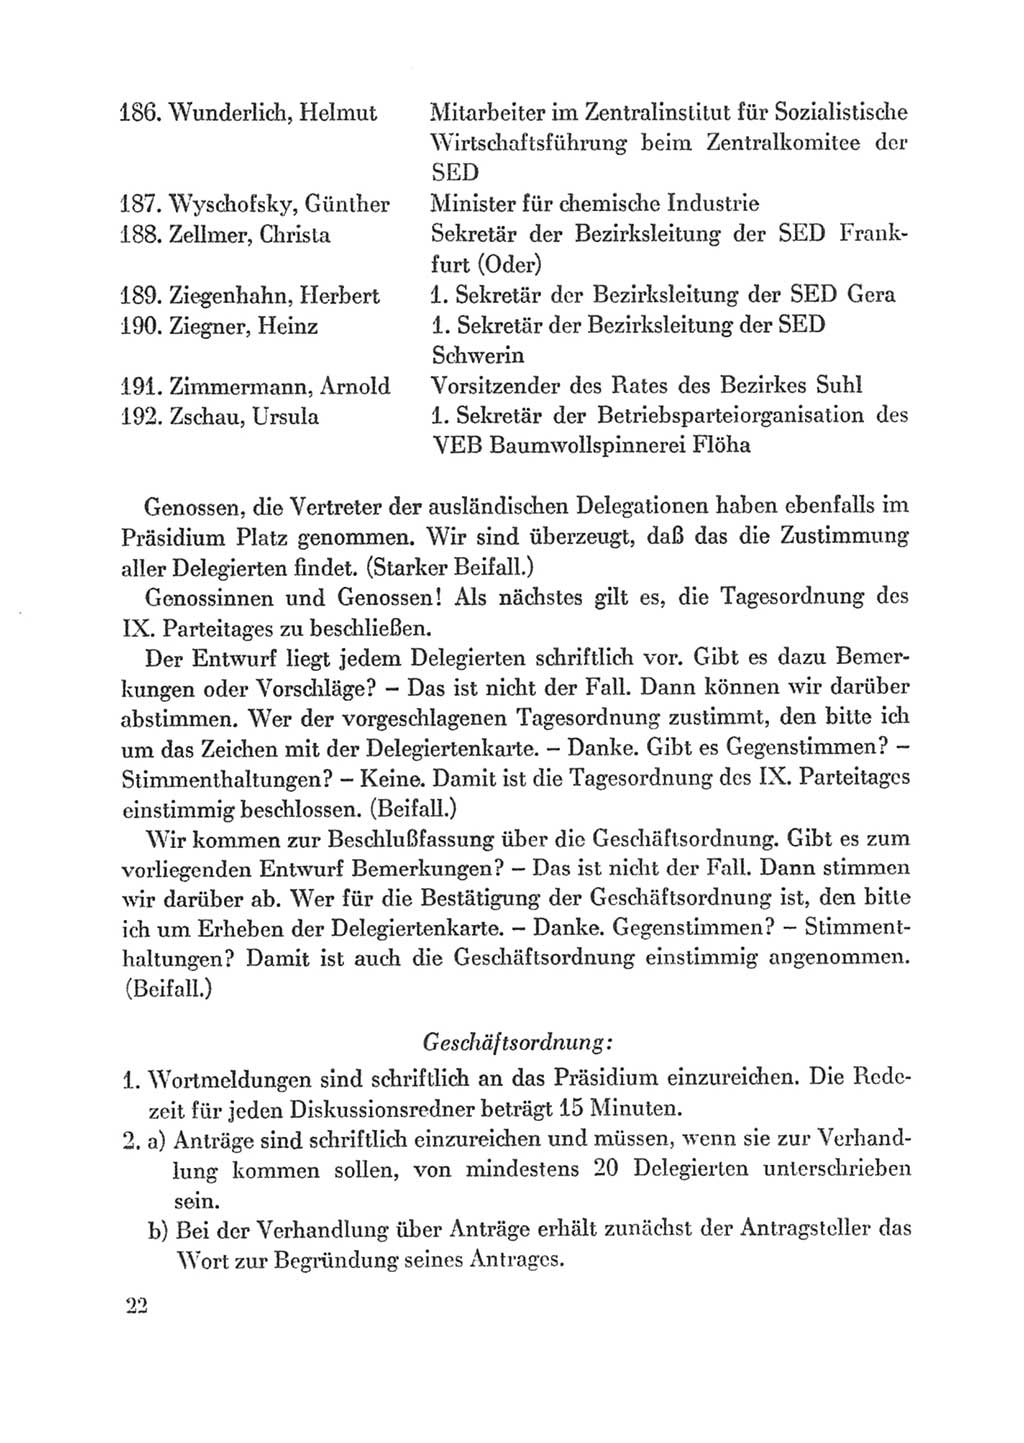 Protokoll der Verhandlungen des Ⅸ. Parteitages der Sozialistischen Einheitspartei Deutschlands (SED) [Deutsche Demokratische Republik (DDR)] 1976, Band 1, Seite 22 (Prot. Verh. Ⅸ. PT SED DDR 1976, Bd. 1, S. 22)